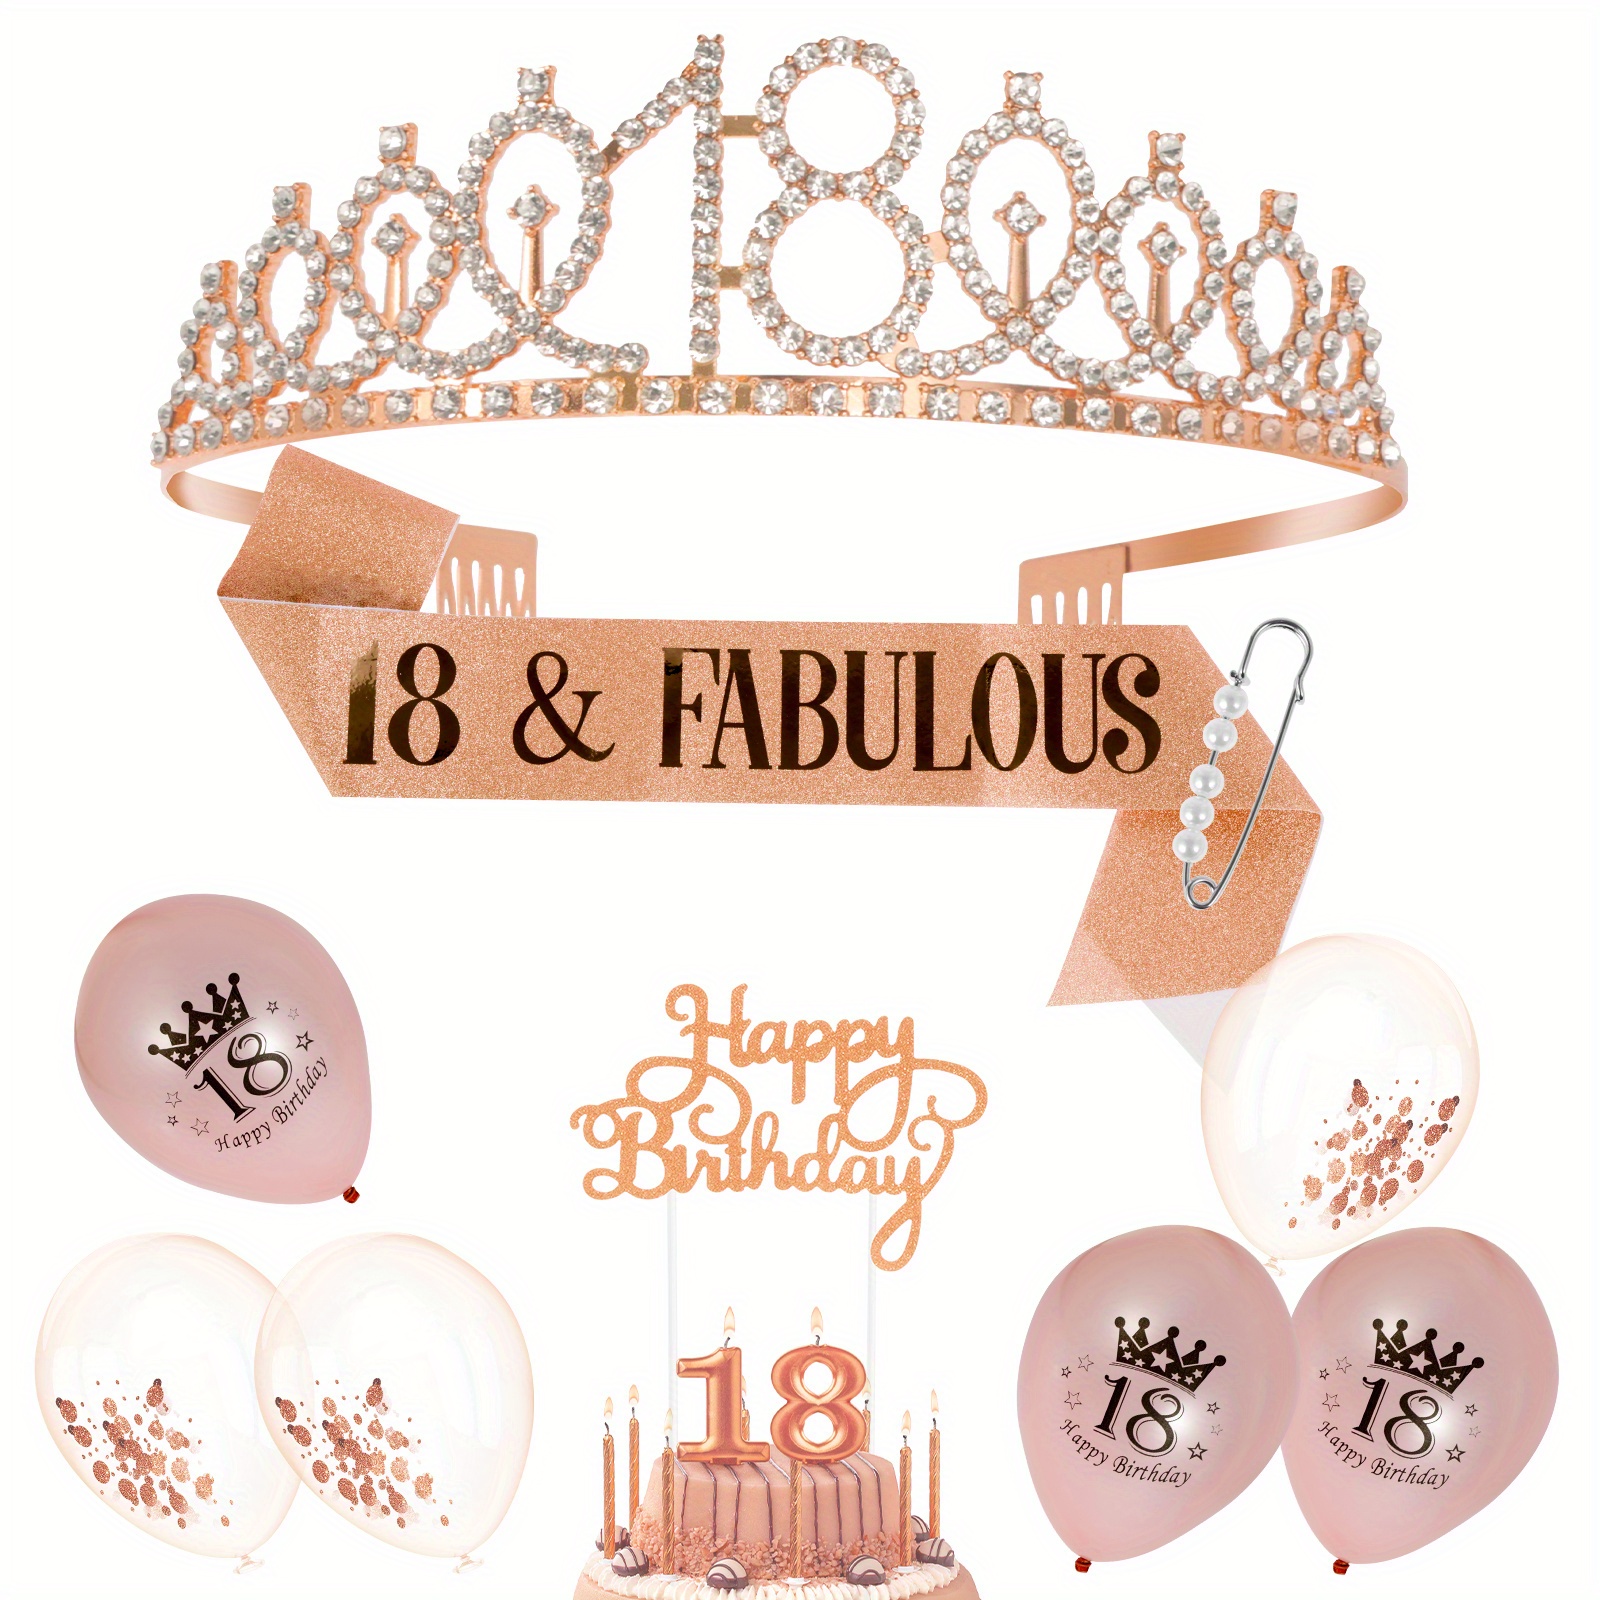 Corona Coroncina Tiara Happy Birthday Copricapo Principessa Regina  Reginetta Accessori Feste a Tema Compleanno Bambina -  -  Addobbi ed articoli per feste, eventi e party